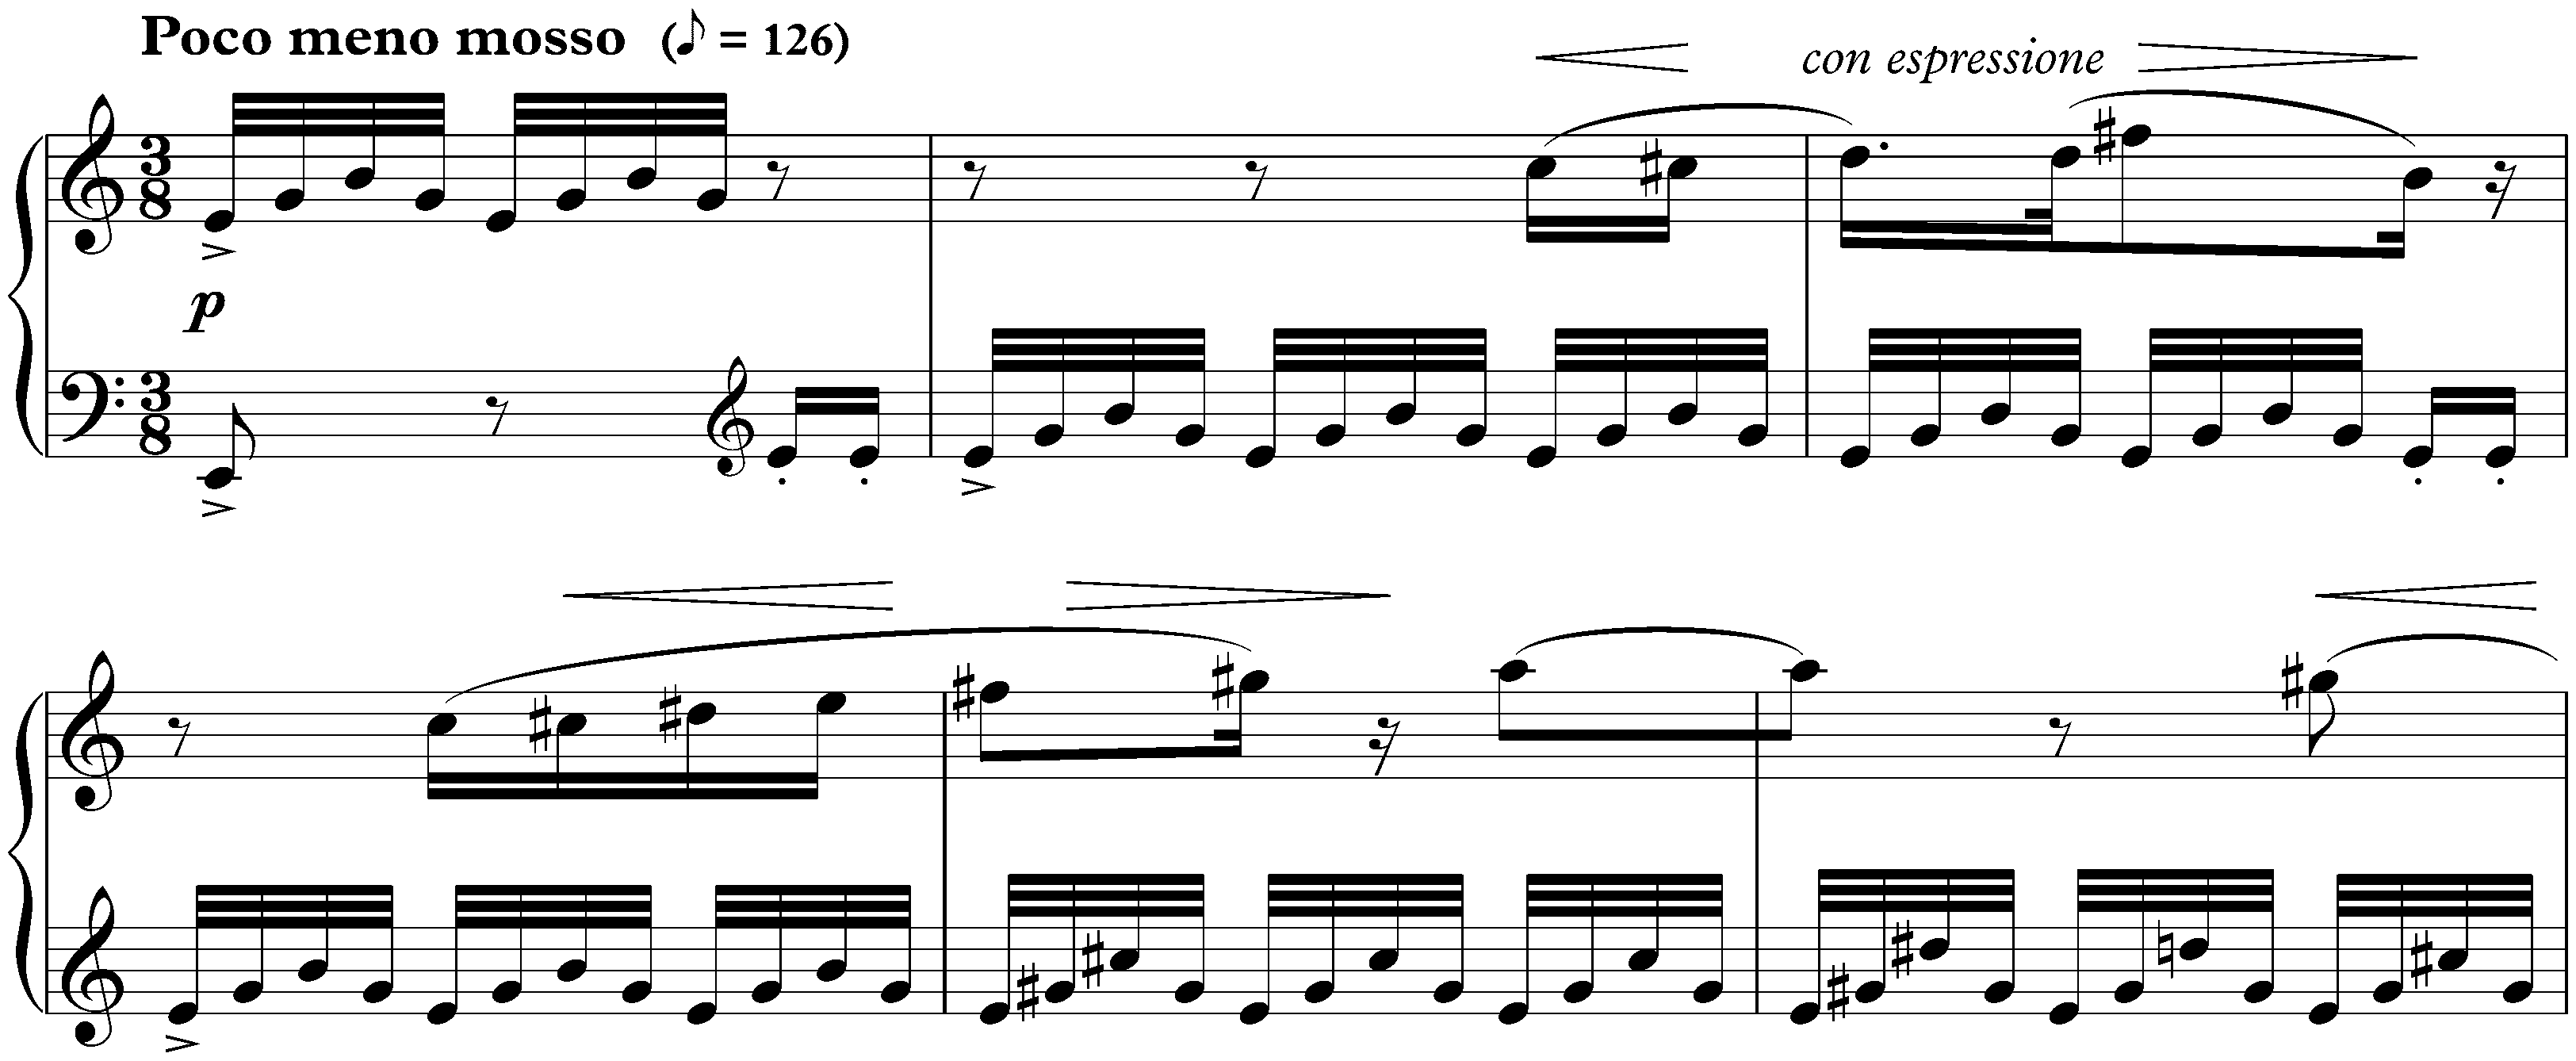 Sonatina in G major, op. 54 no. 2; 2. Andante amabile